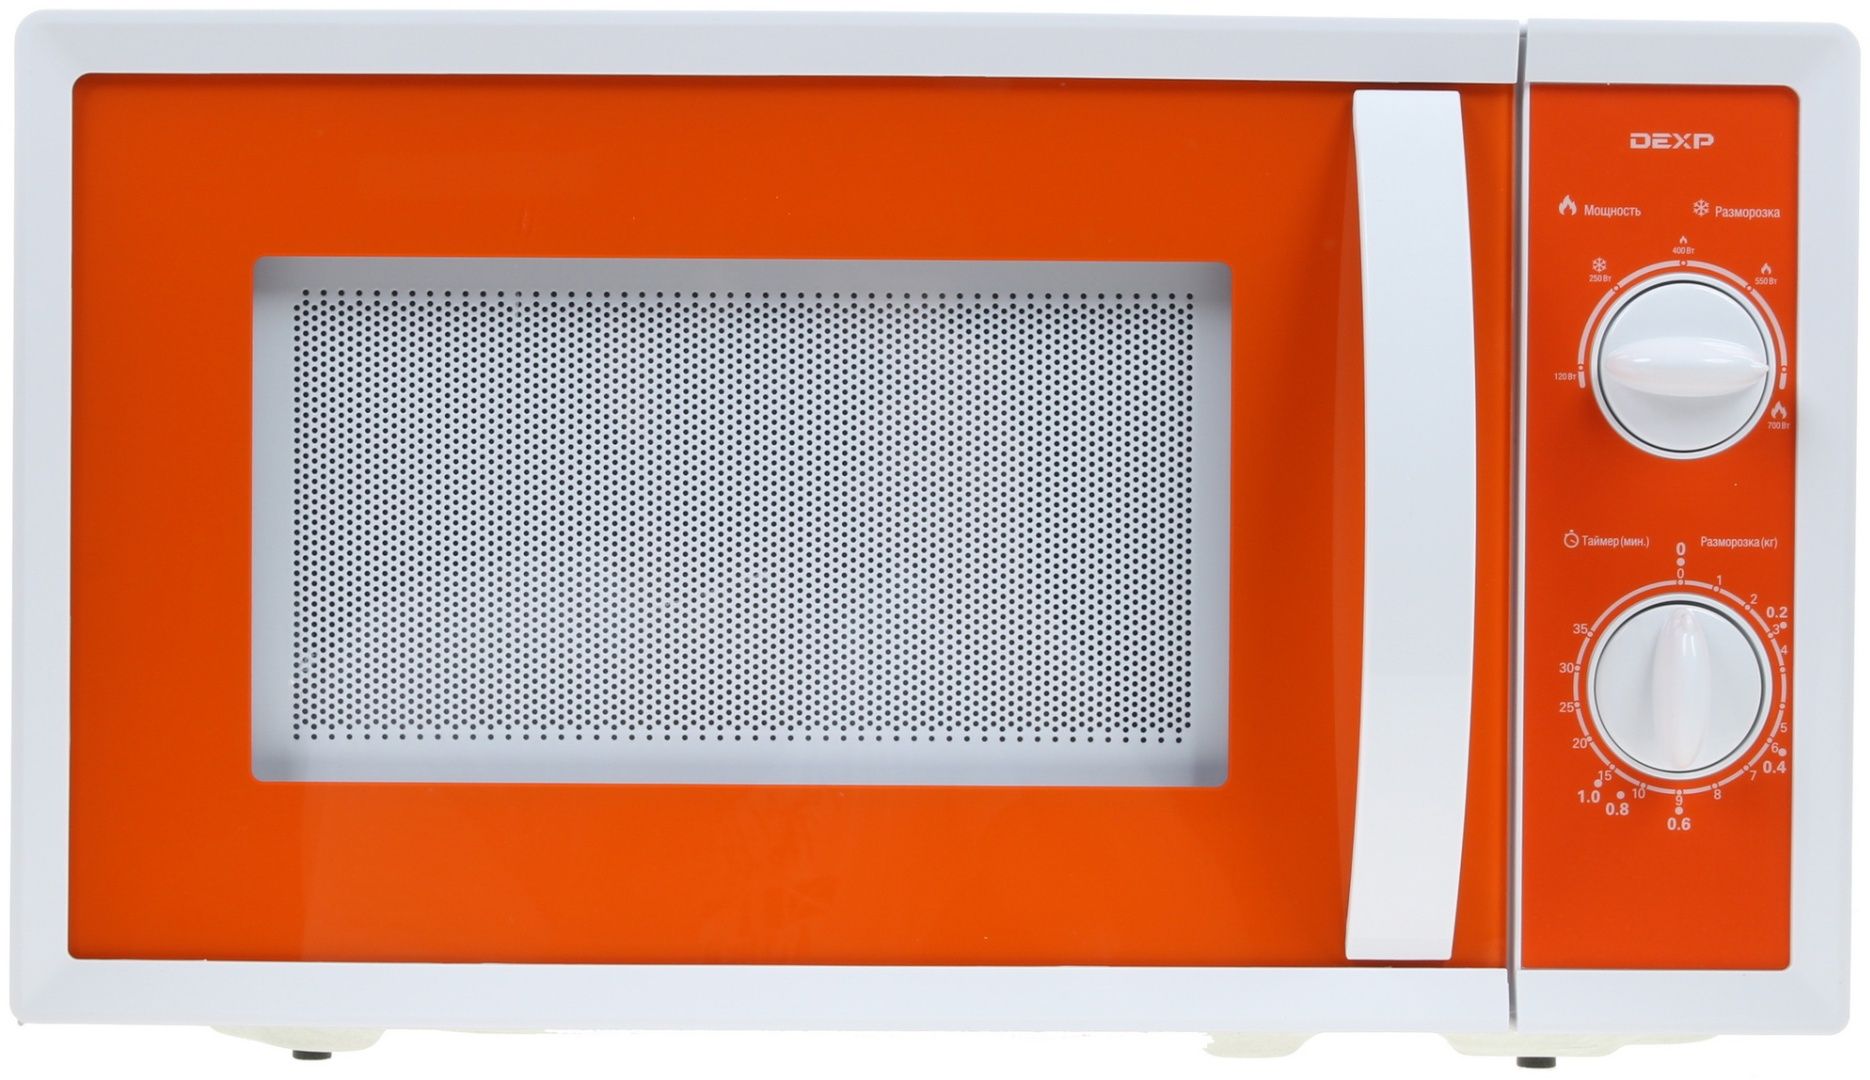 Dexp свч. Микроволновая печь DEXP MC-or оранжевый. Микроволновая печь DEXP MC-or оранжевый, белый. ДНС микроволновая печь оранжевая. Микроволновая печь DEXP MC-Rd.